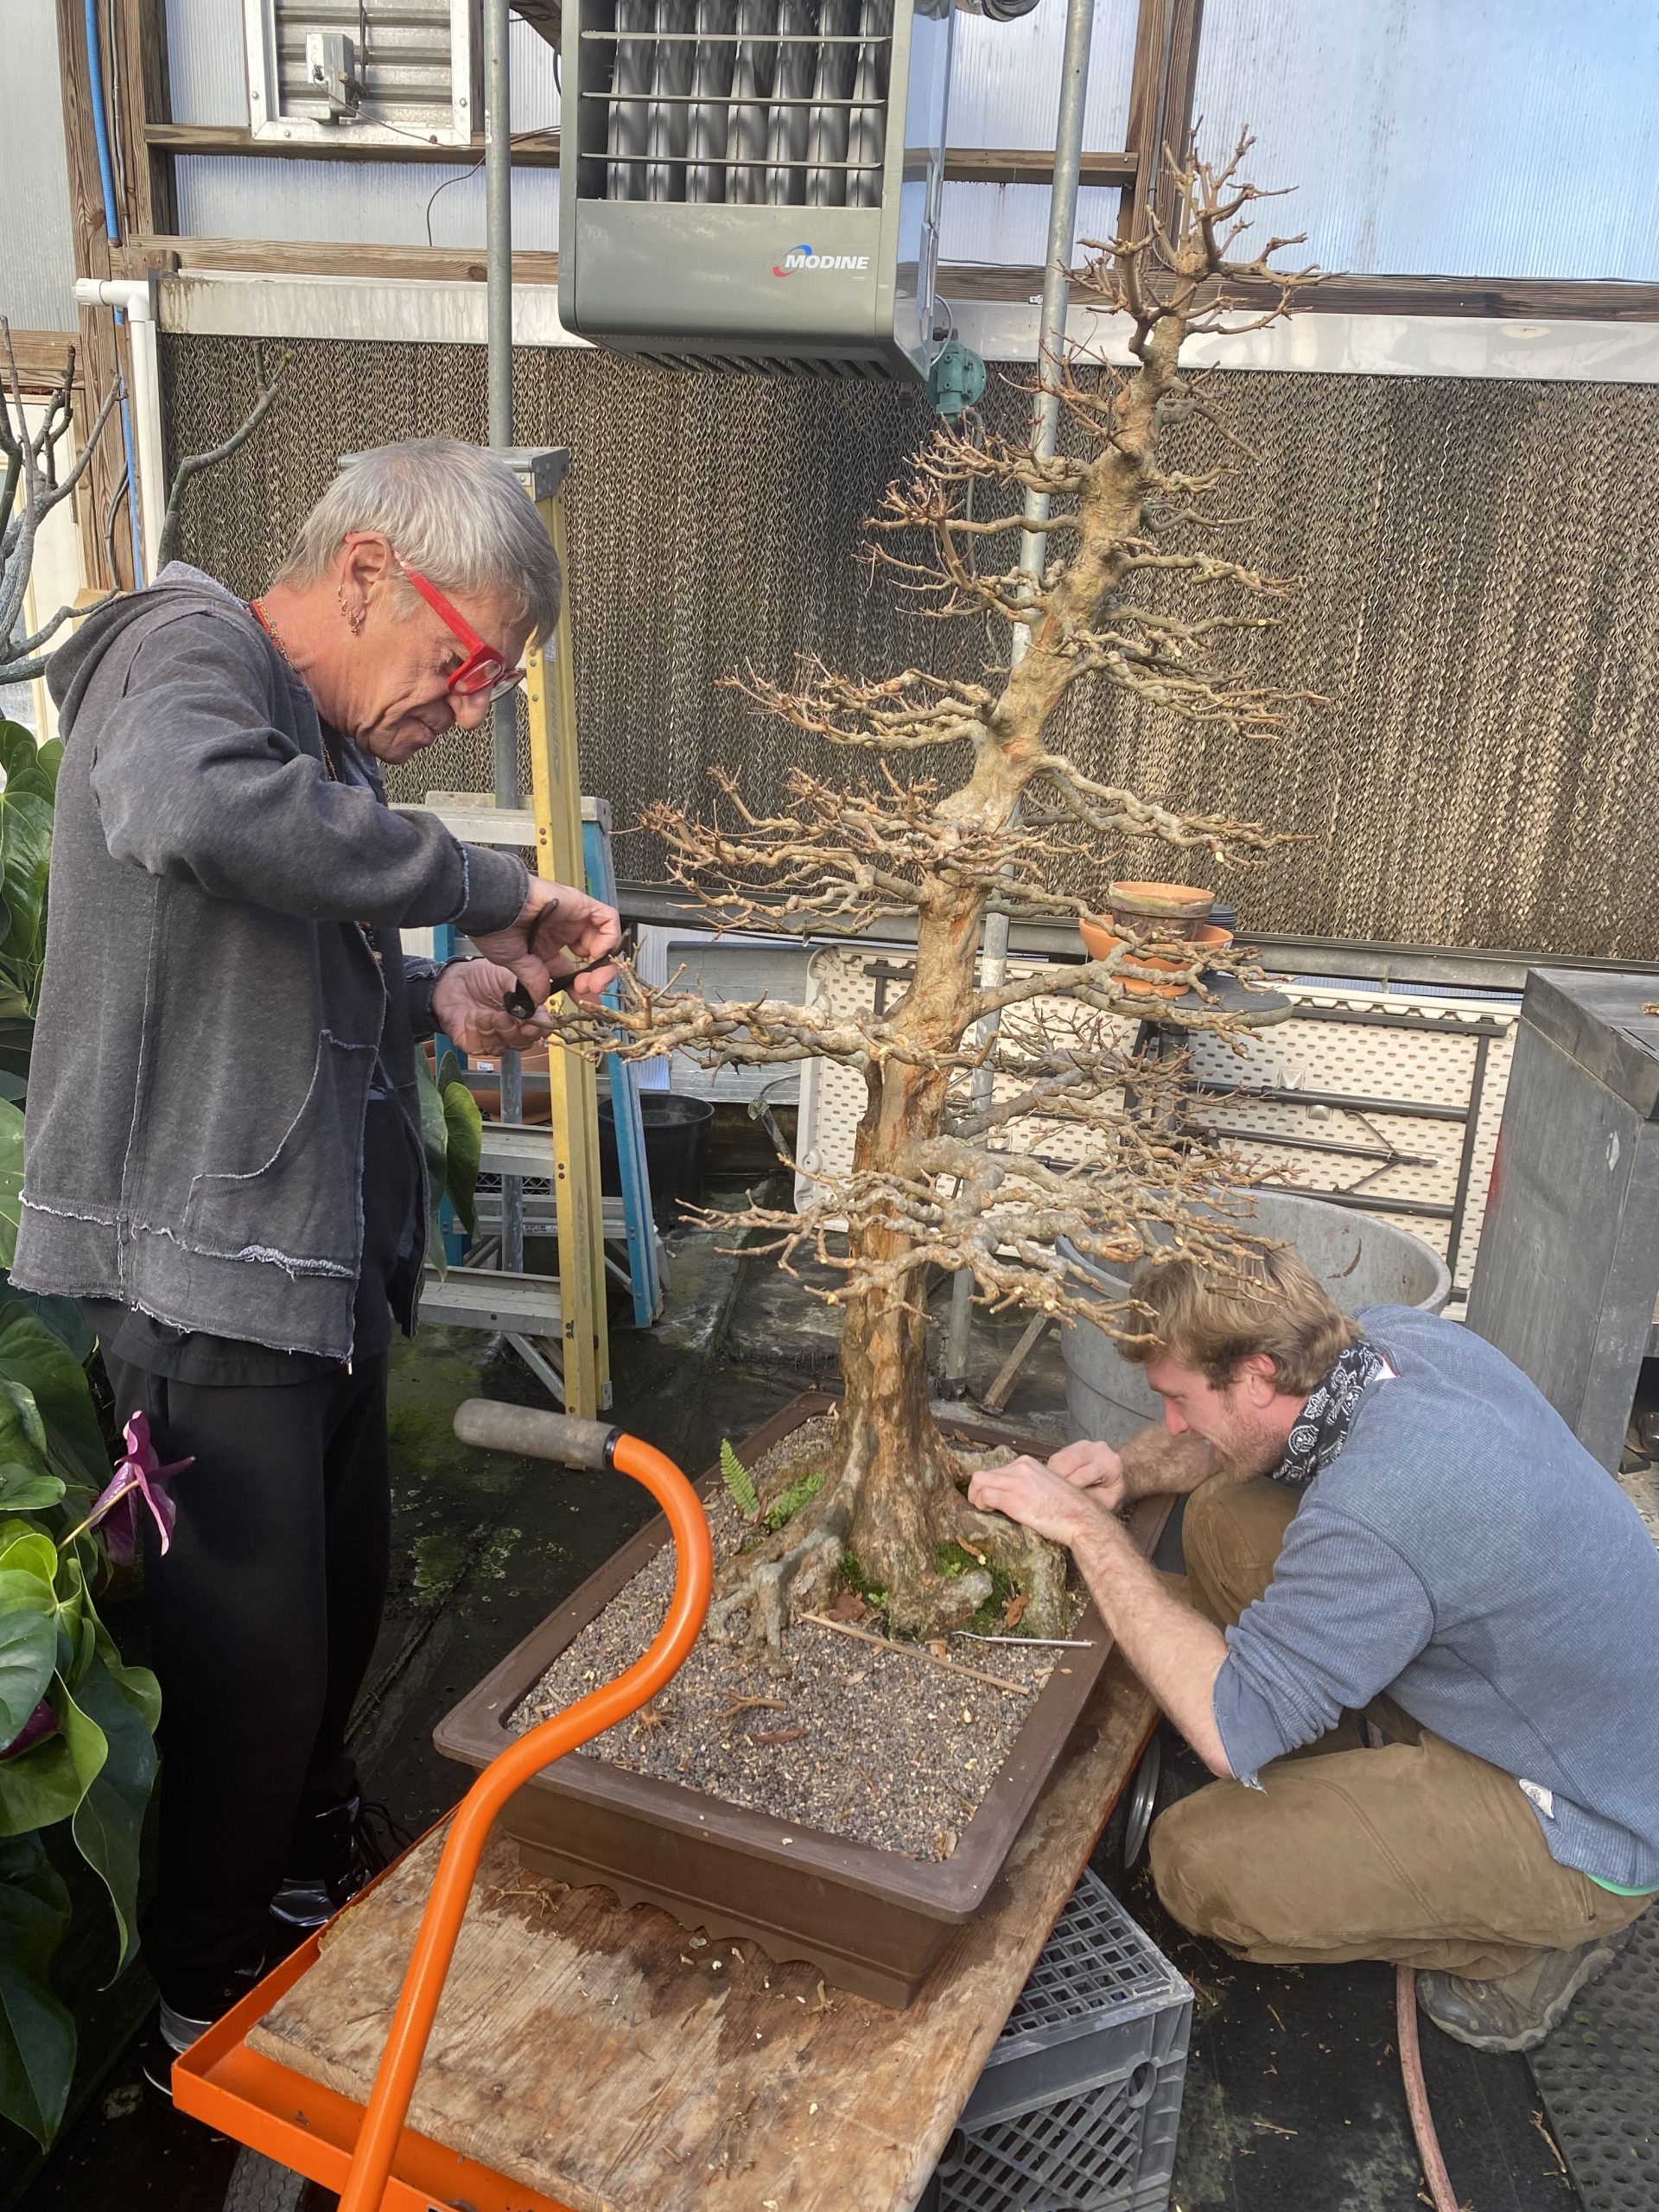 Ryan Olsen works on a bonsai tree with Chilton